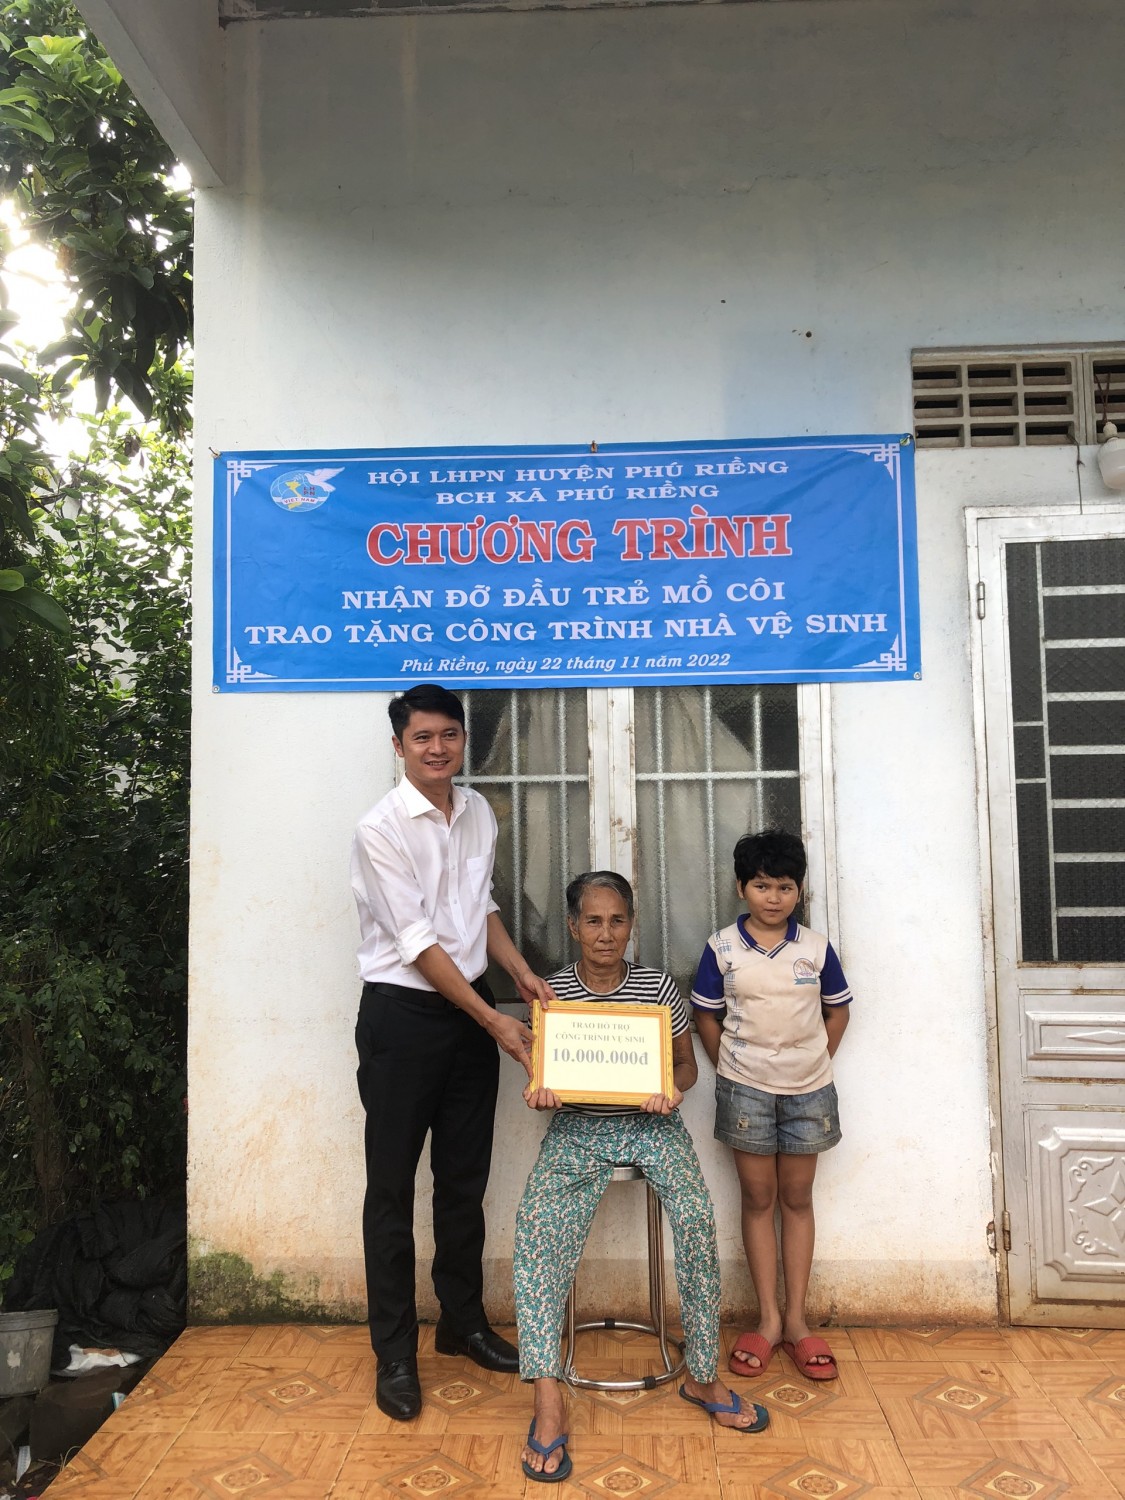 Trao tặng 01 công trình Nhà vệ sinh và nhận đỡ đầu 01 trẻ em mồ côi tại thôn Phú Vinh, xã Phú Riềng